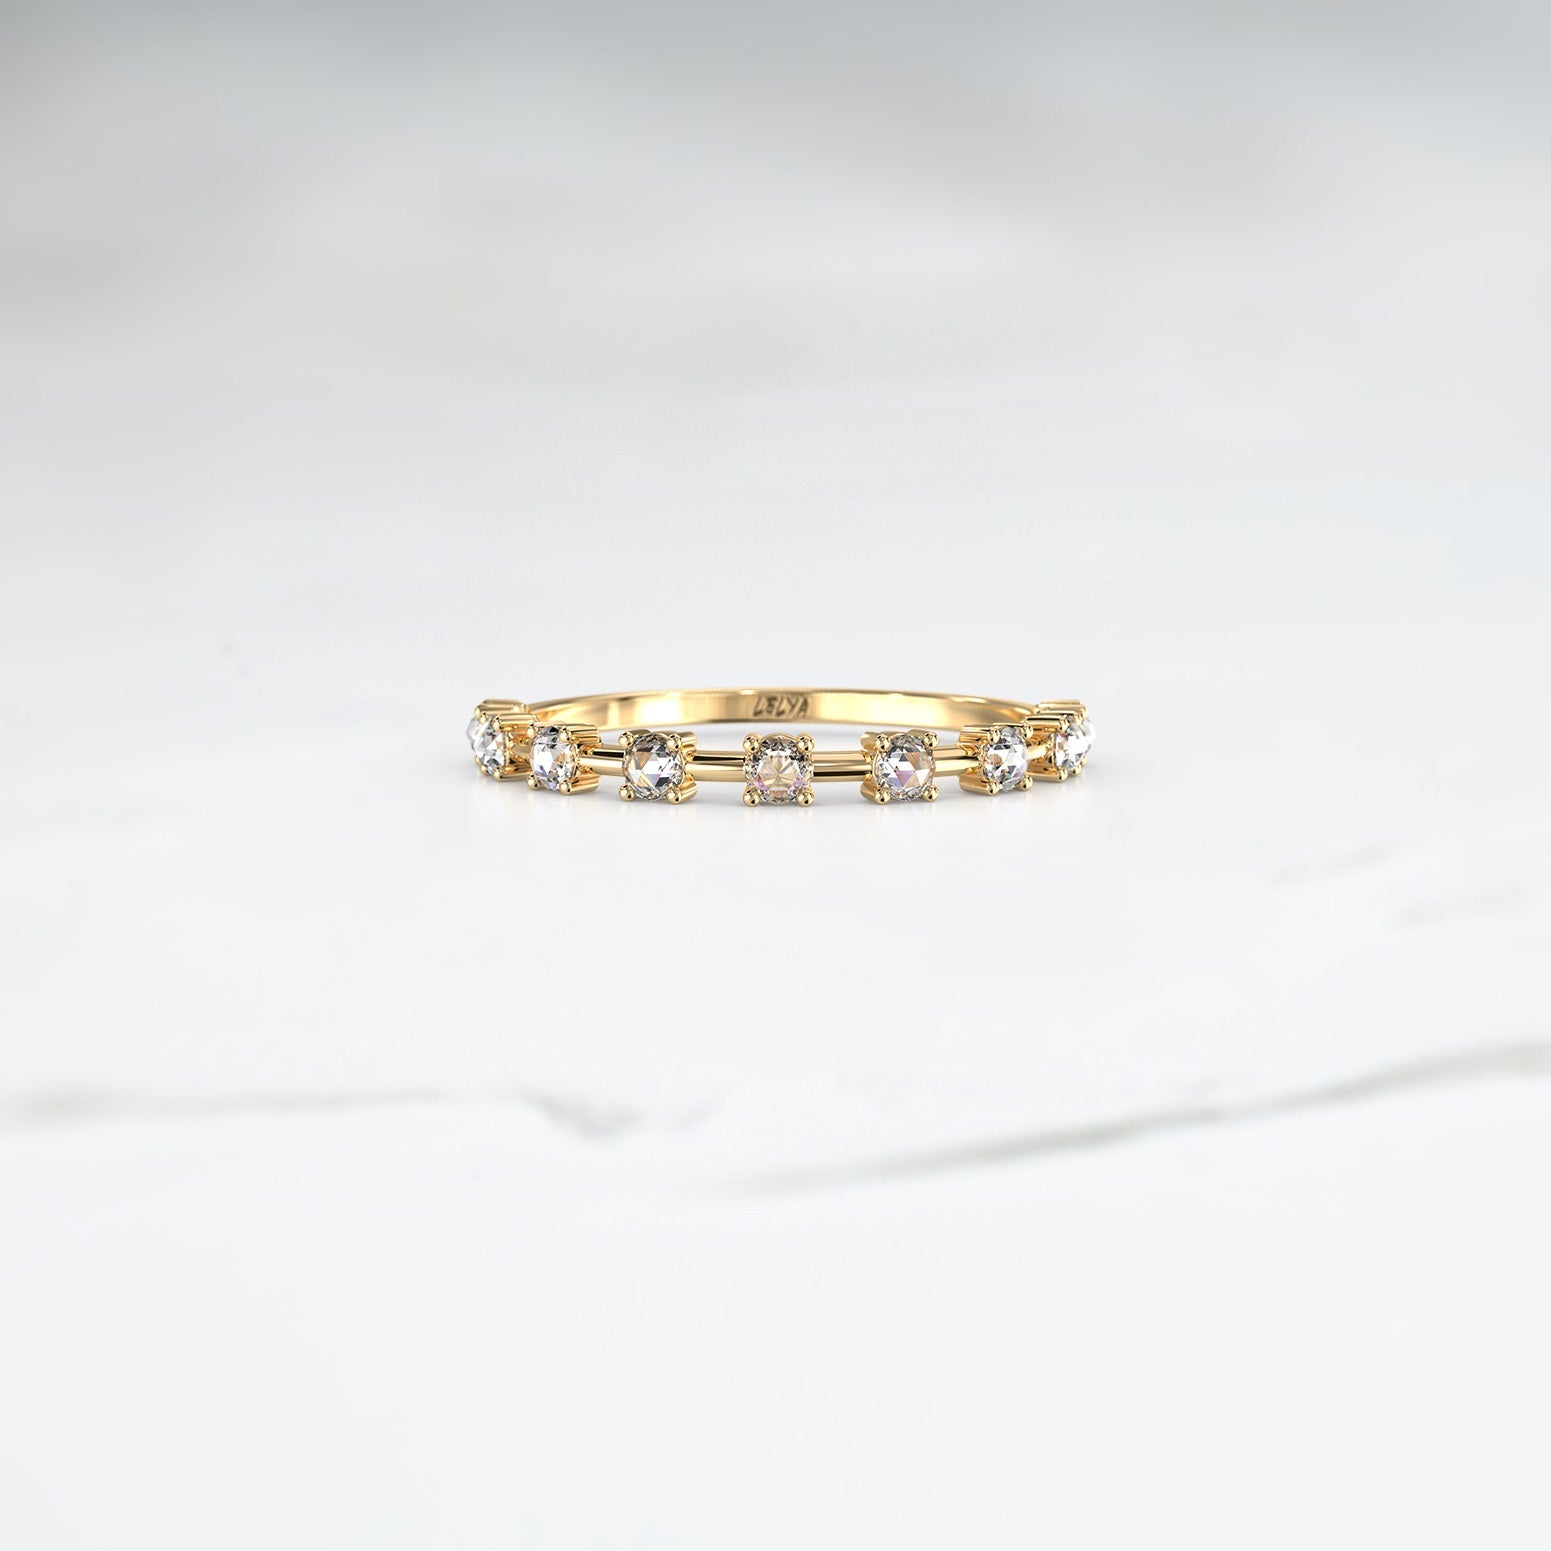 Pleiades Band - Lelya - bespoke engagement and wedding rings made in Scotland, UK